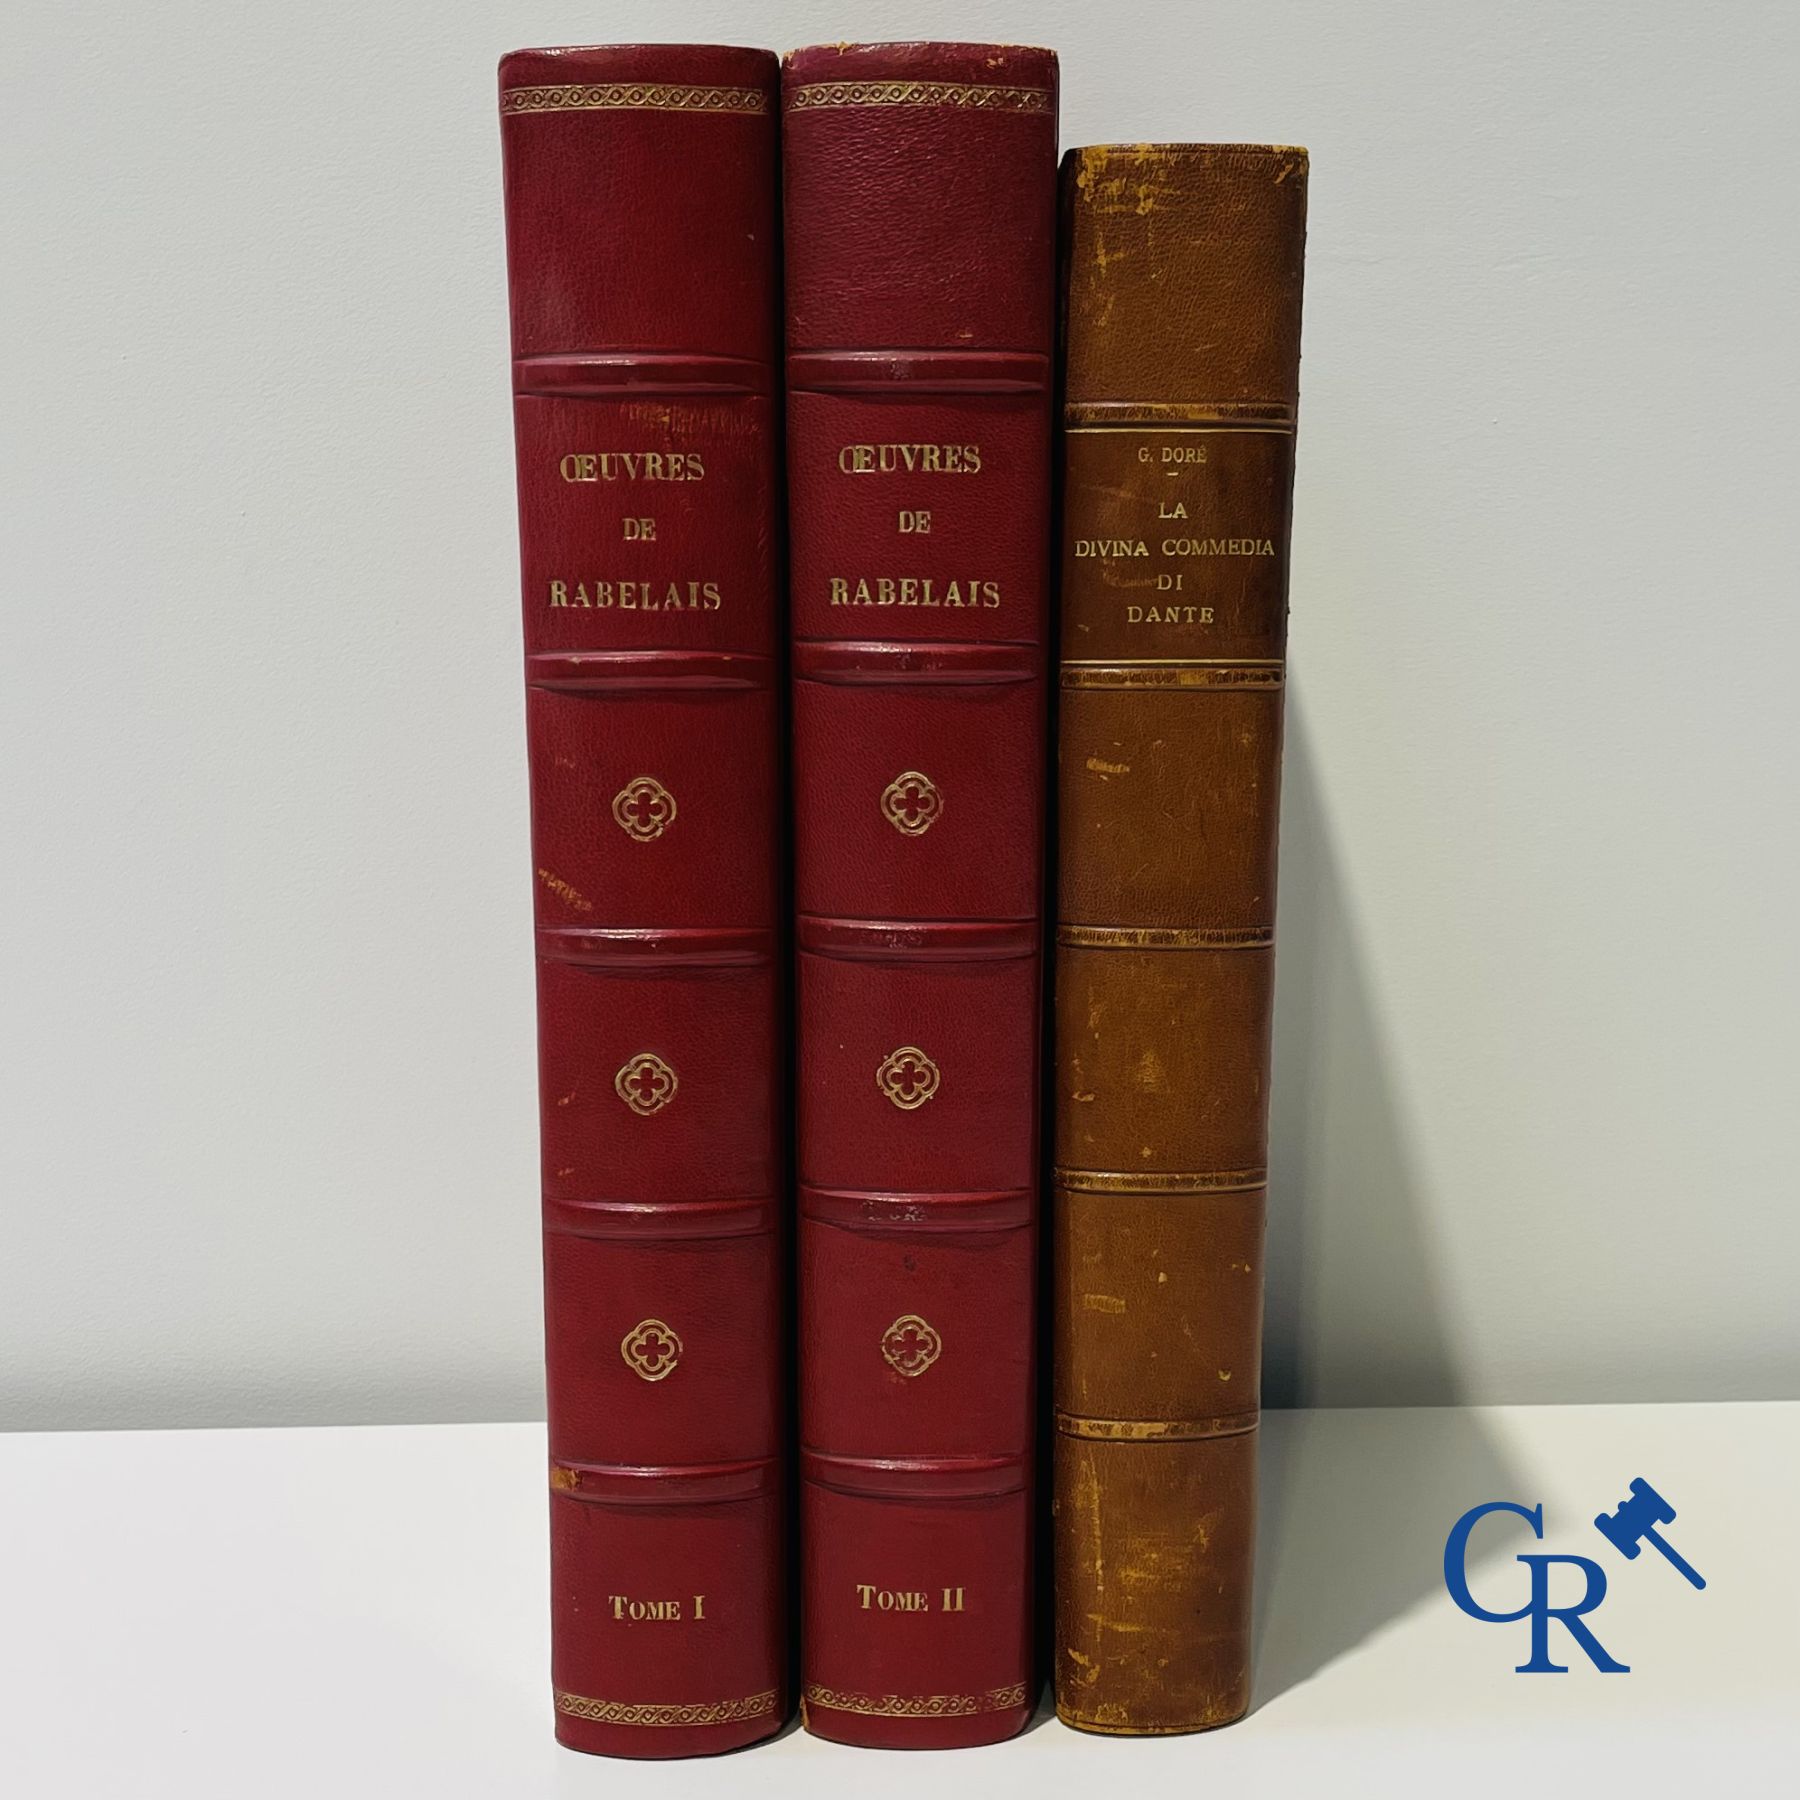 Books: Rabelais François, Works by Rabelais, drawings by Gustave Doré. Dante Alighieri, La Divina Commedia.